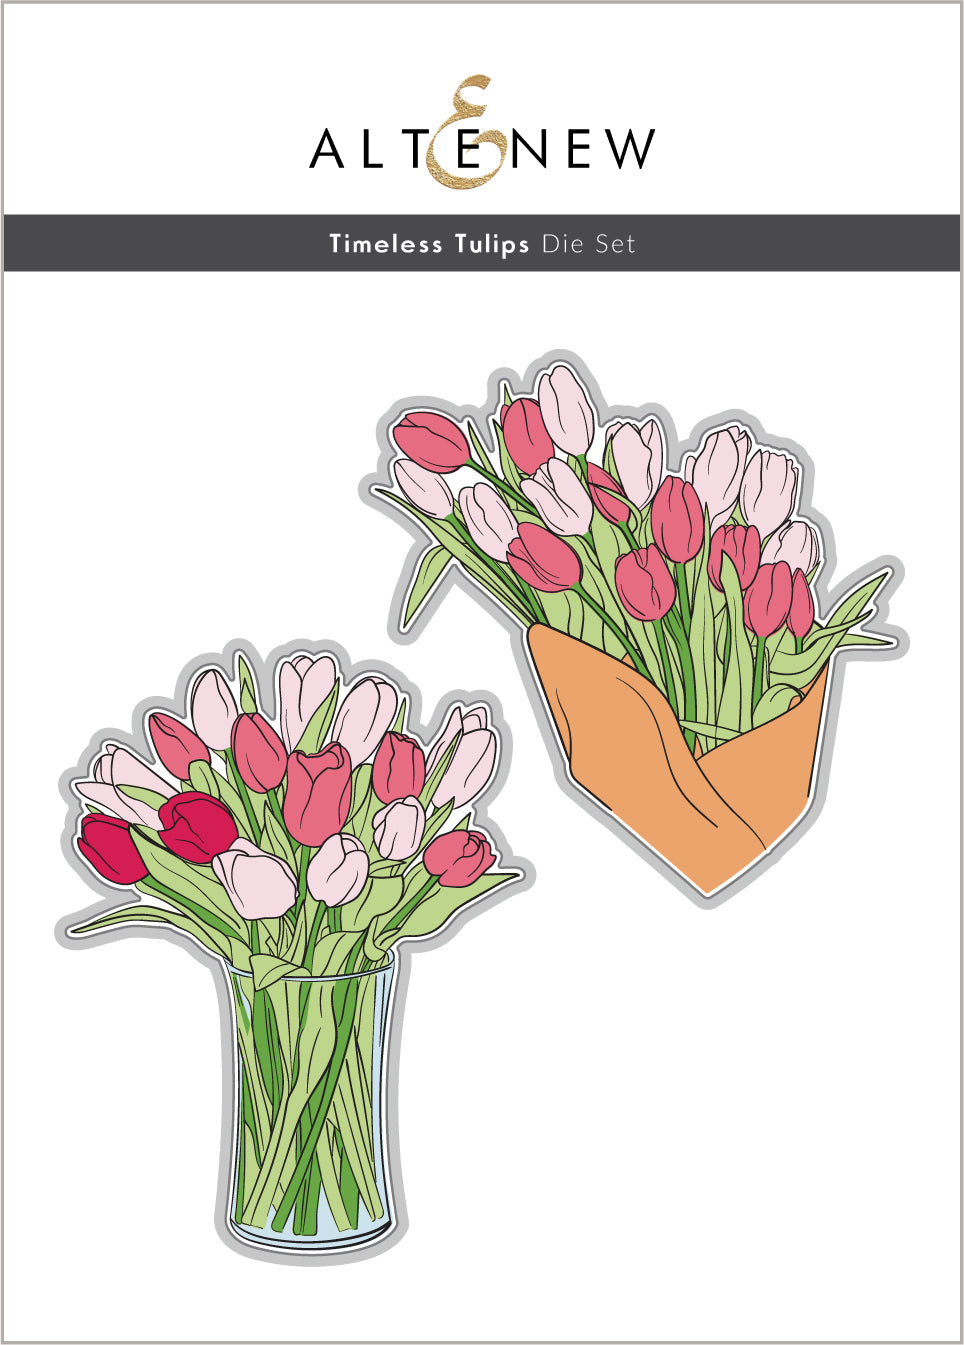 Dies Timeless Tulips Die Set